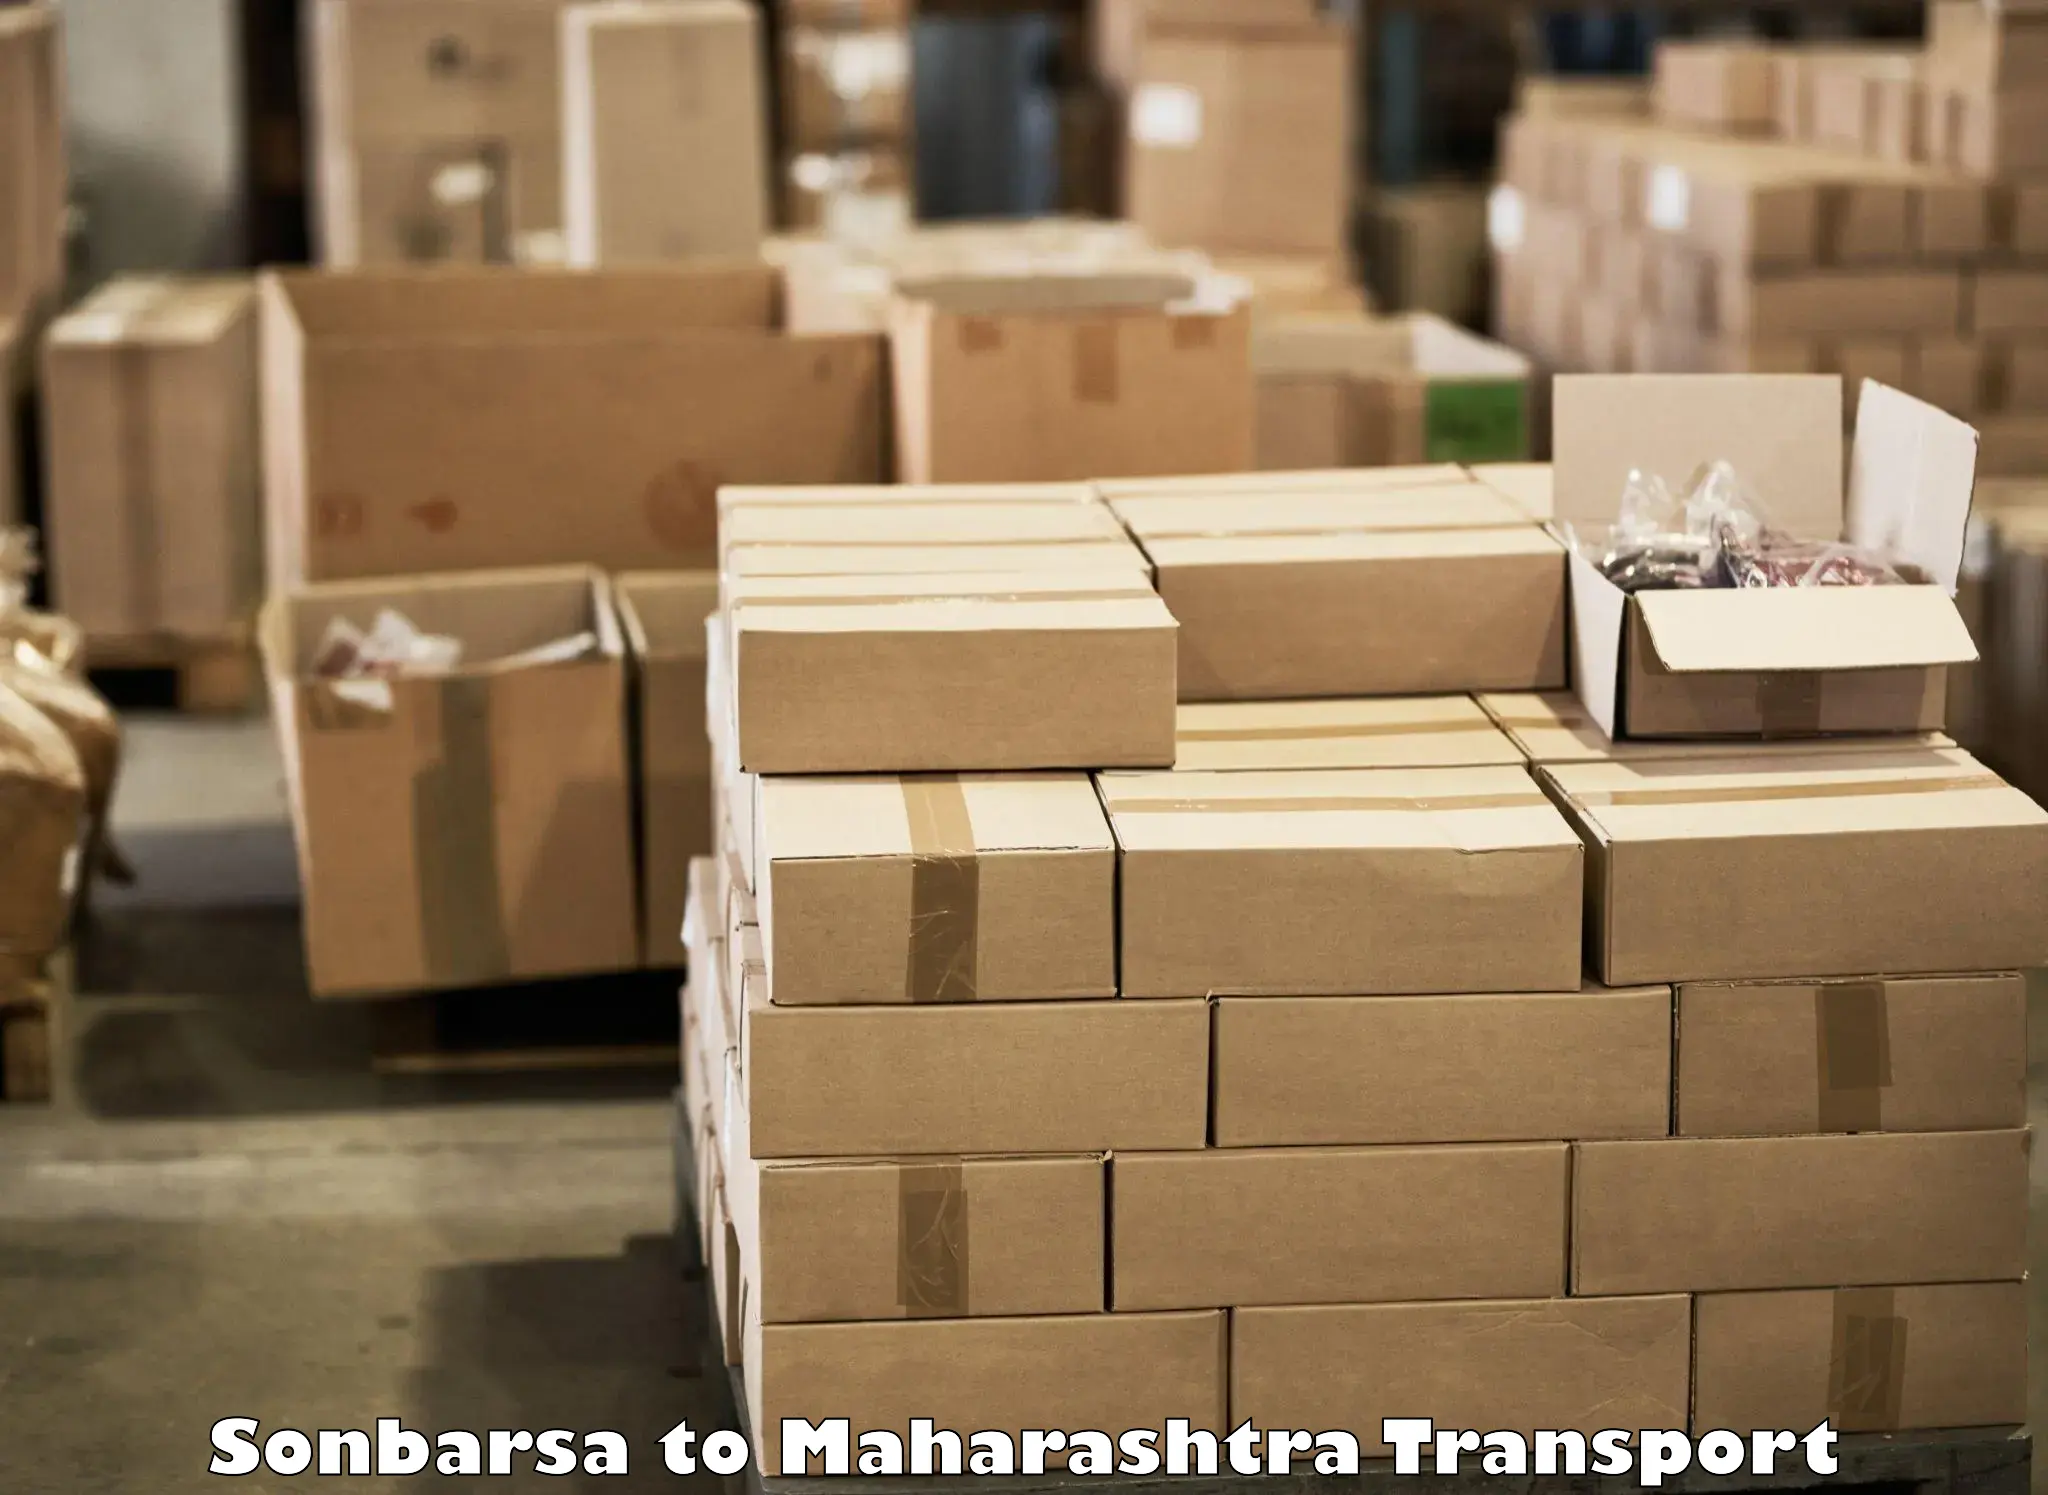 Daily parcel service transport Sonbarsa to Maharashtra